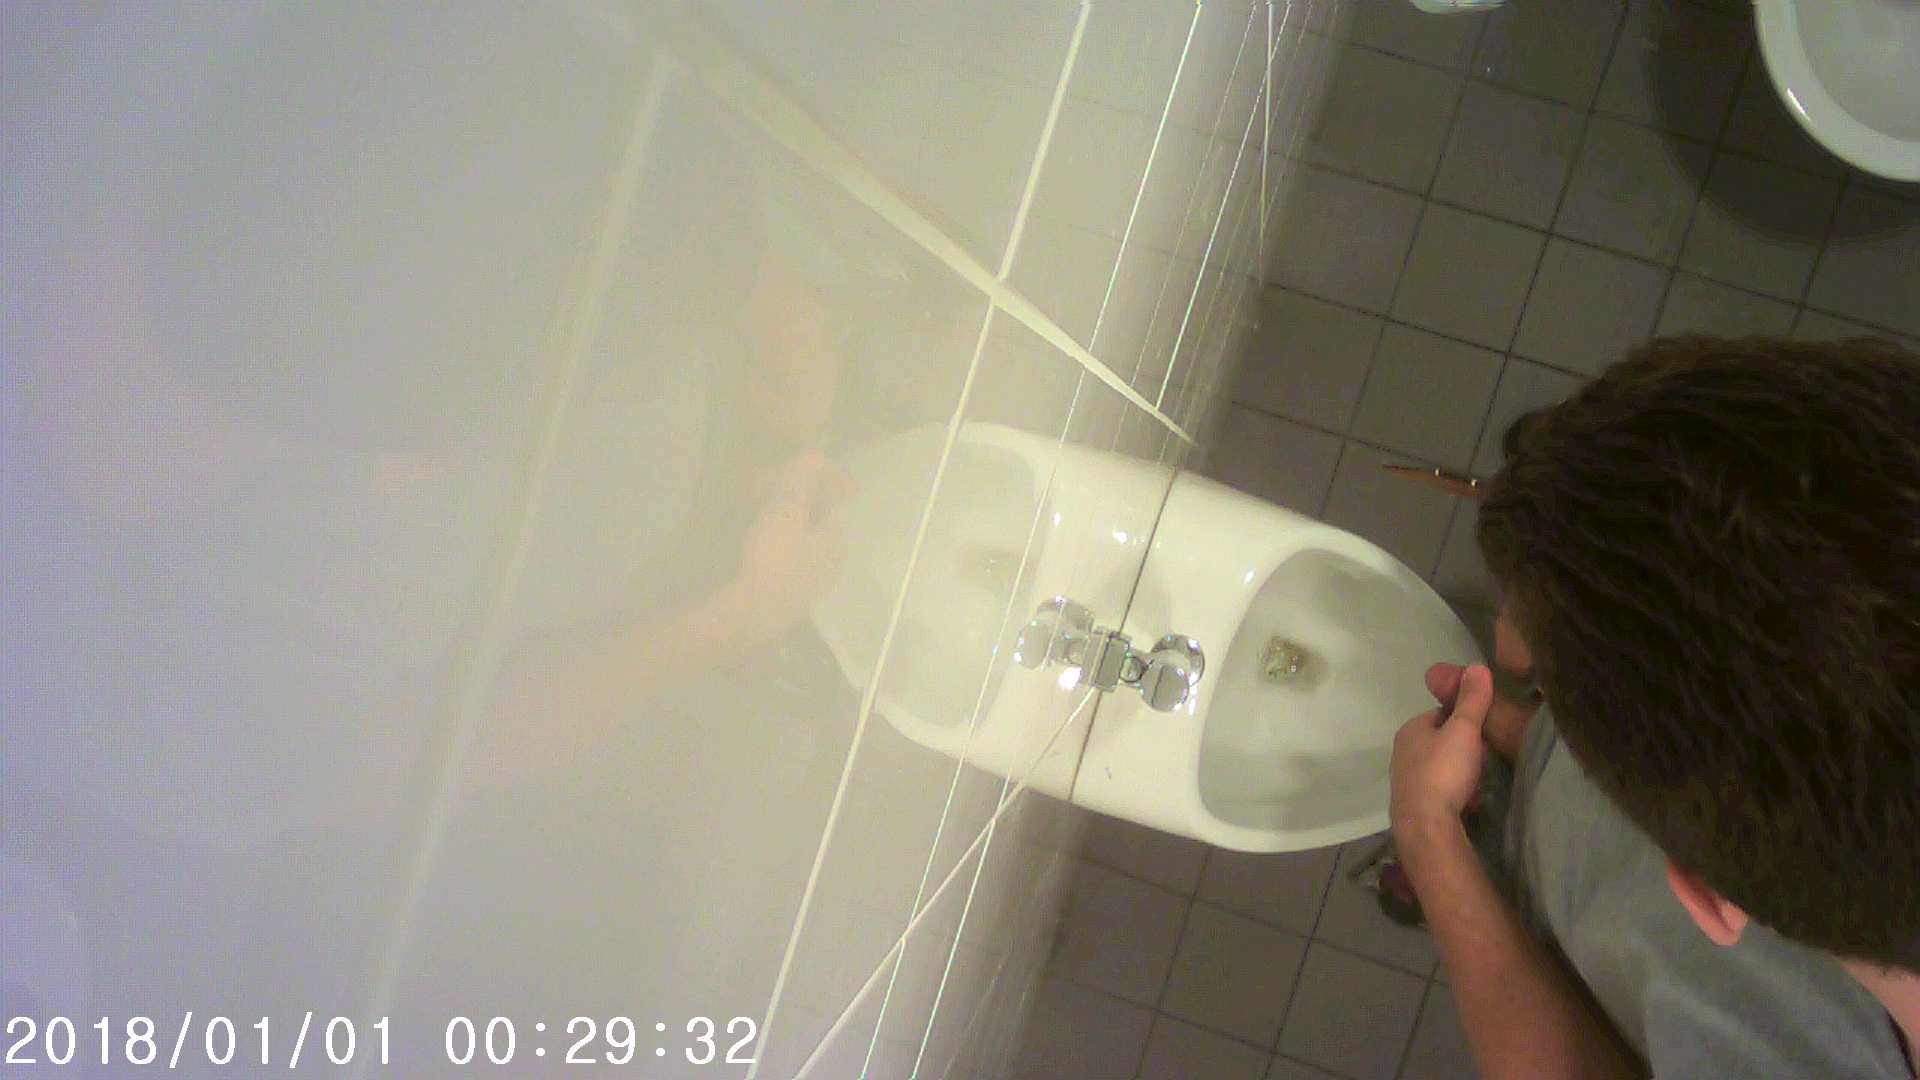 Toilet spying 5